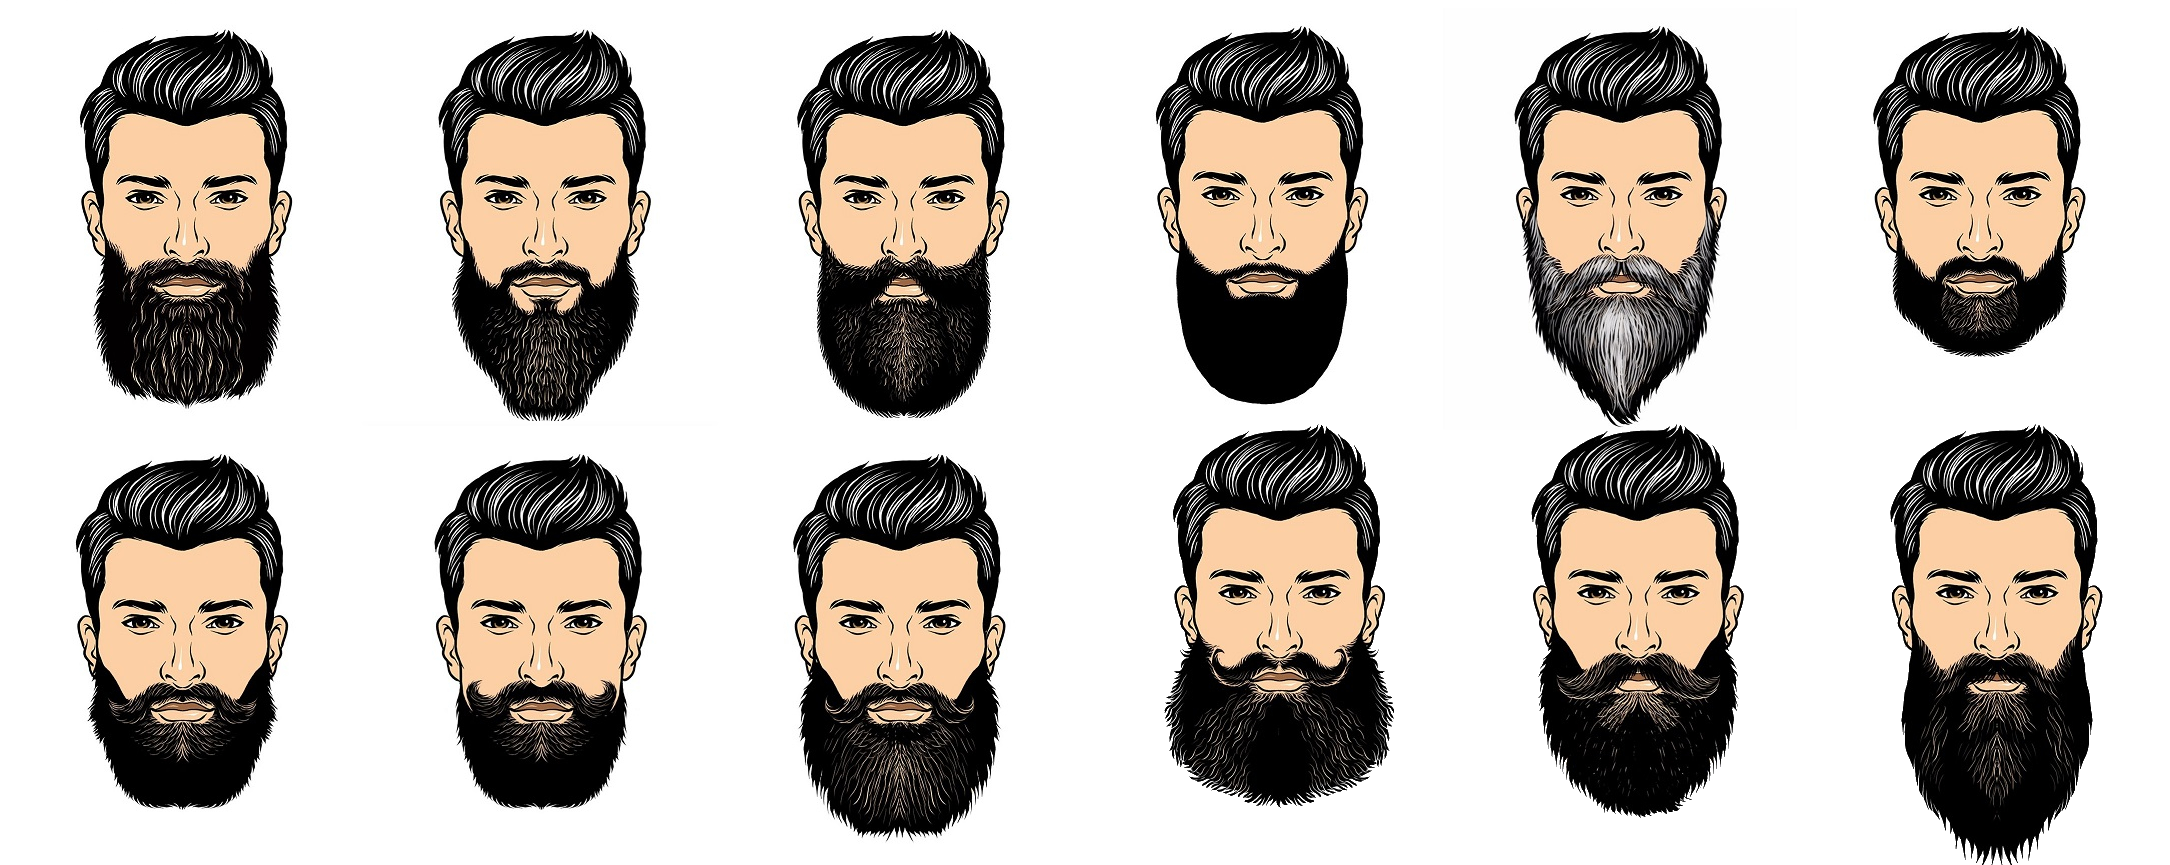 24 Best Beard Styles For Men In 2017 Pkalerts